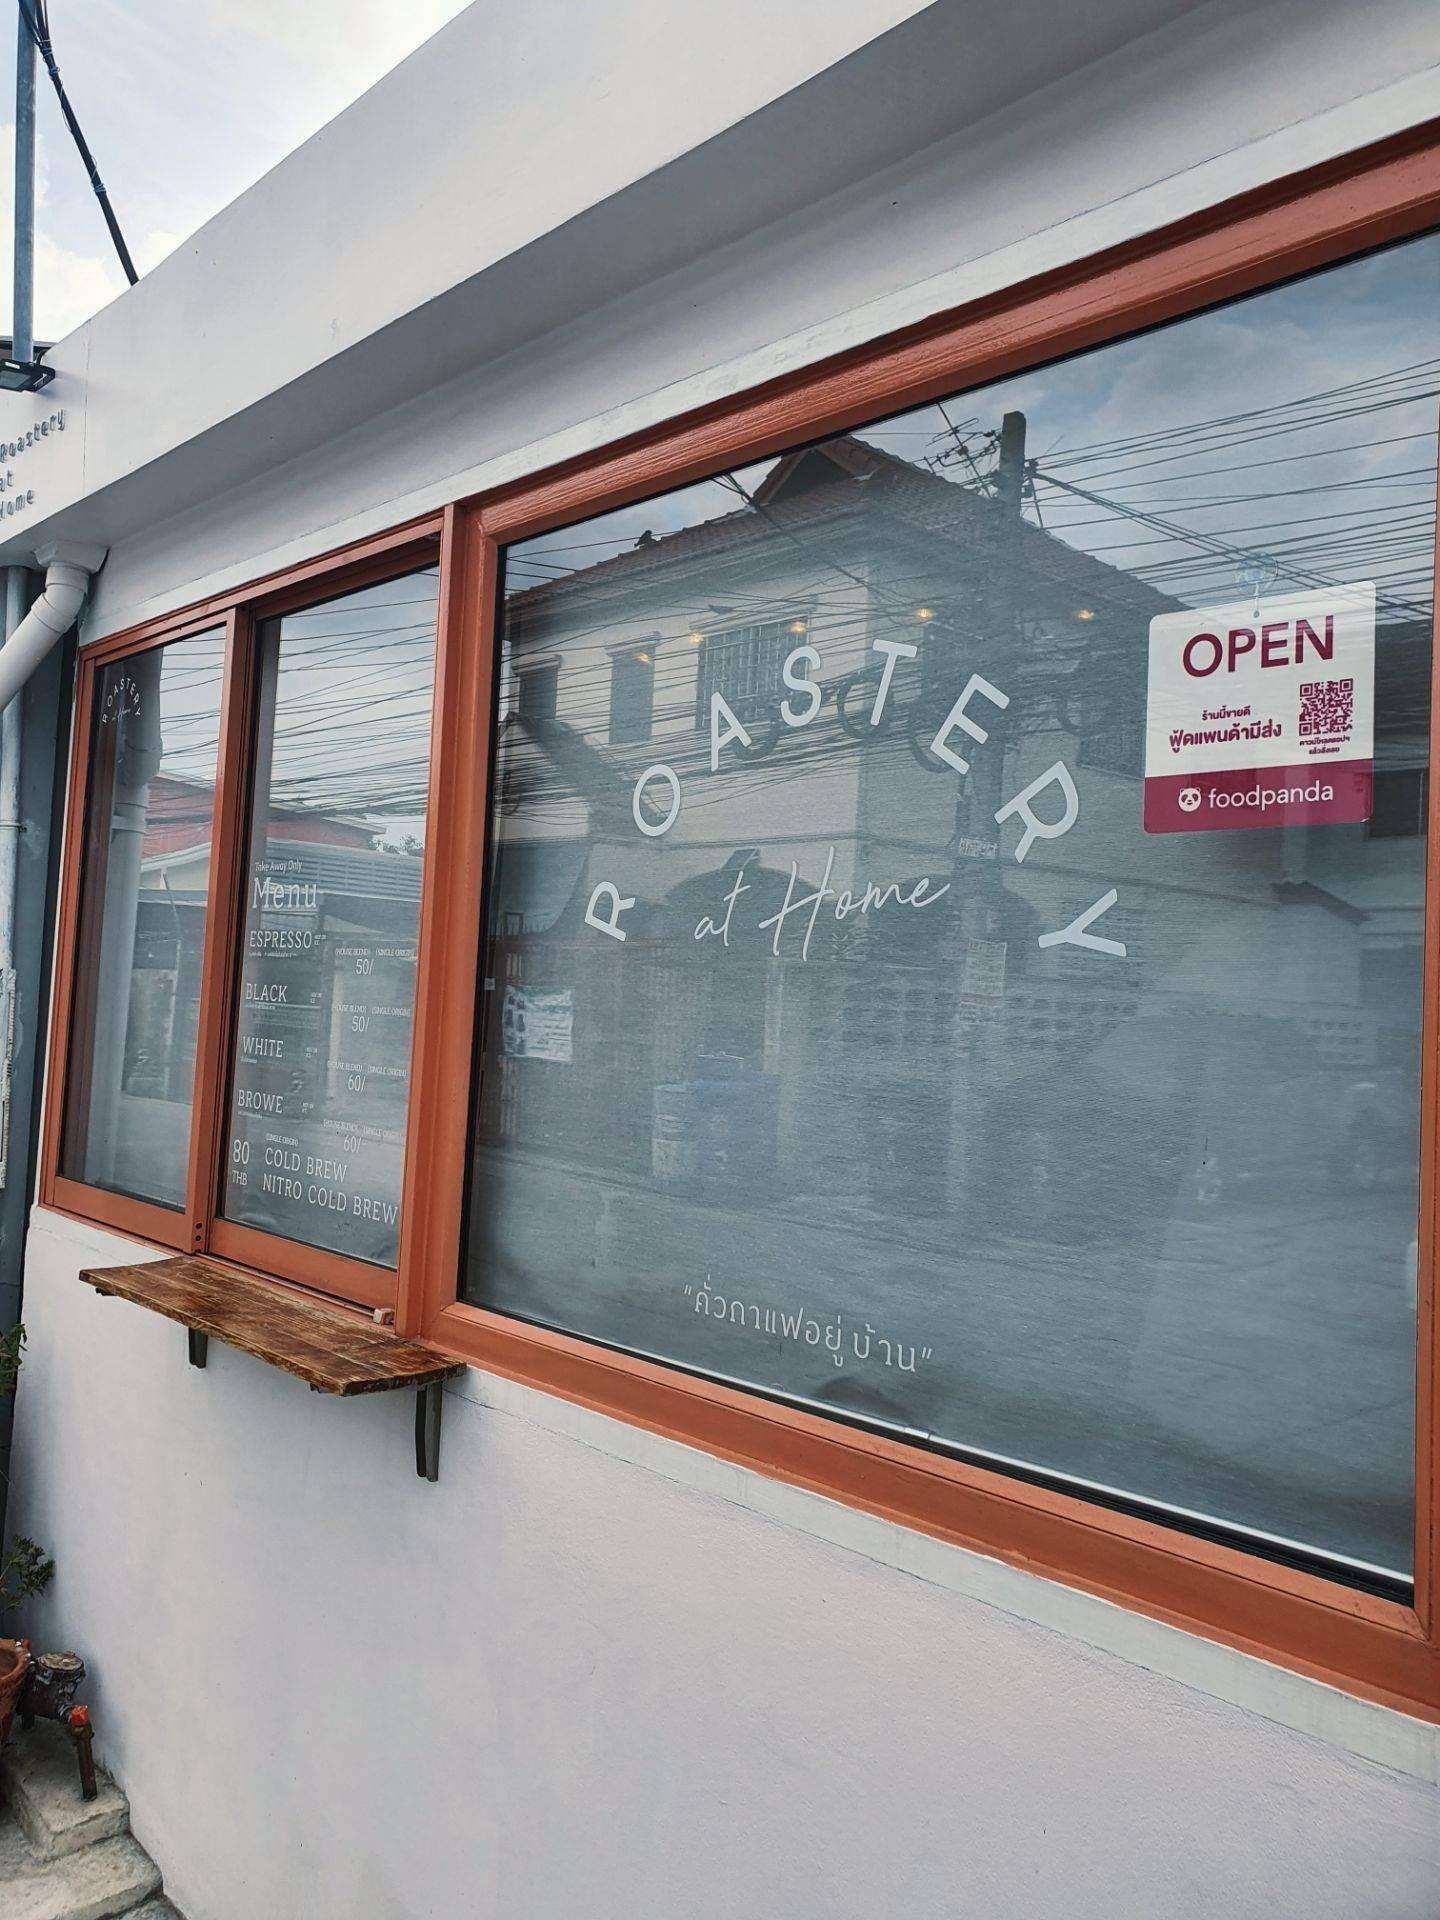 รีวิว Roastery at Home ด่านสำโรง42 - Home Coffee ในซอยลึก - Wongnai